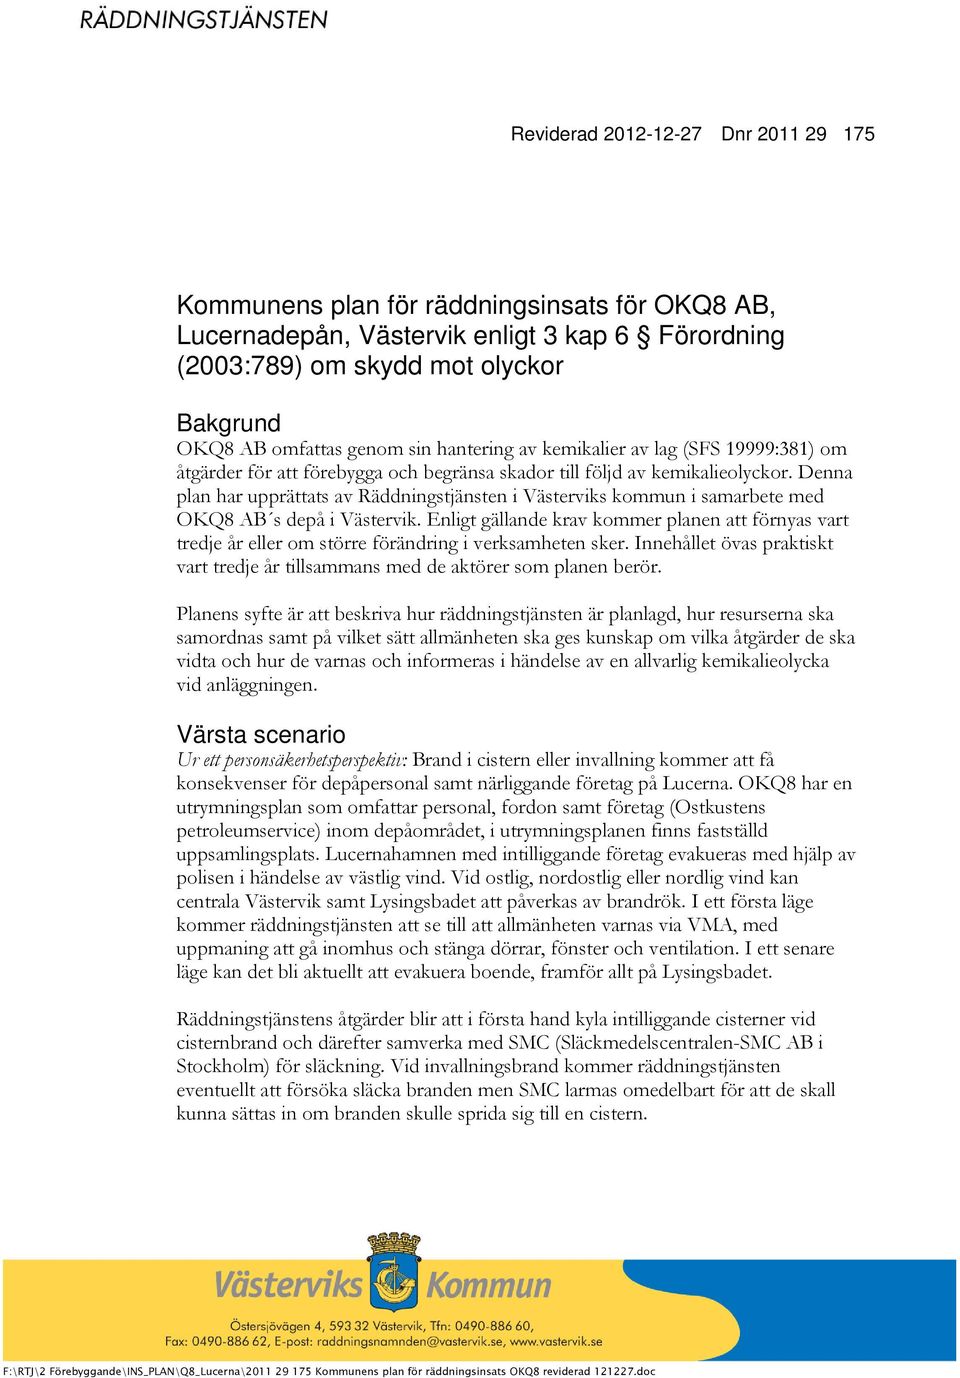 Denna plan har upprättats av Räddningstjänsten i Västerviks kommun i samarbete med OKQ8 AB s depå i Västervik.